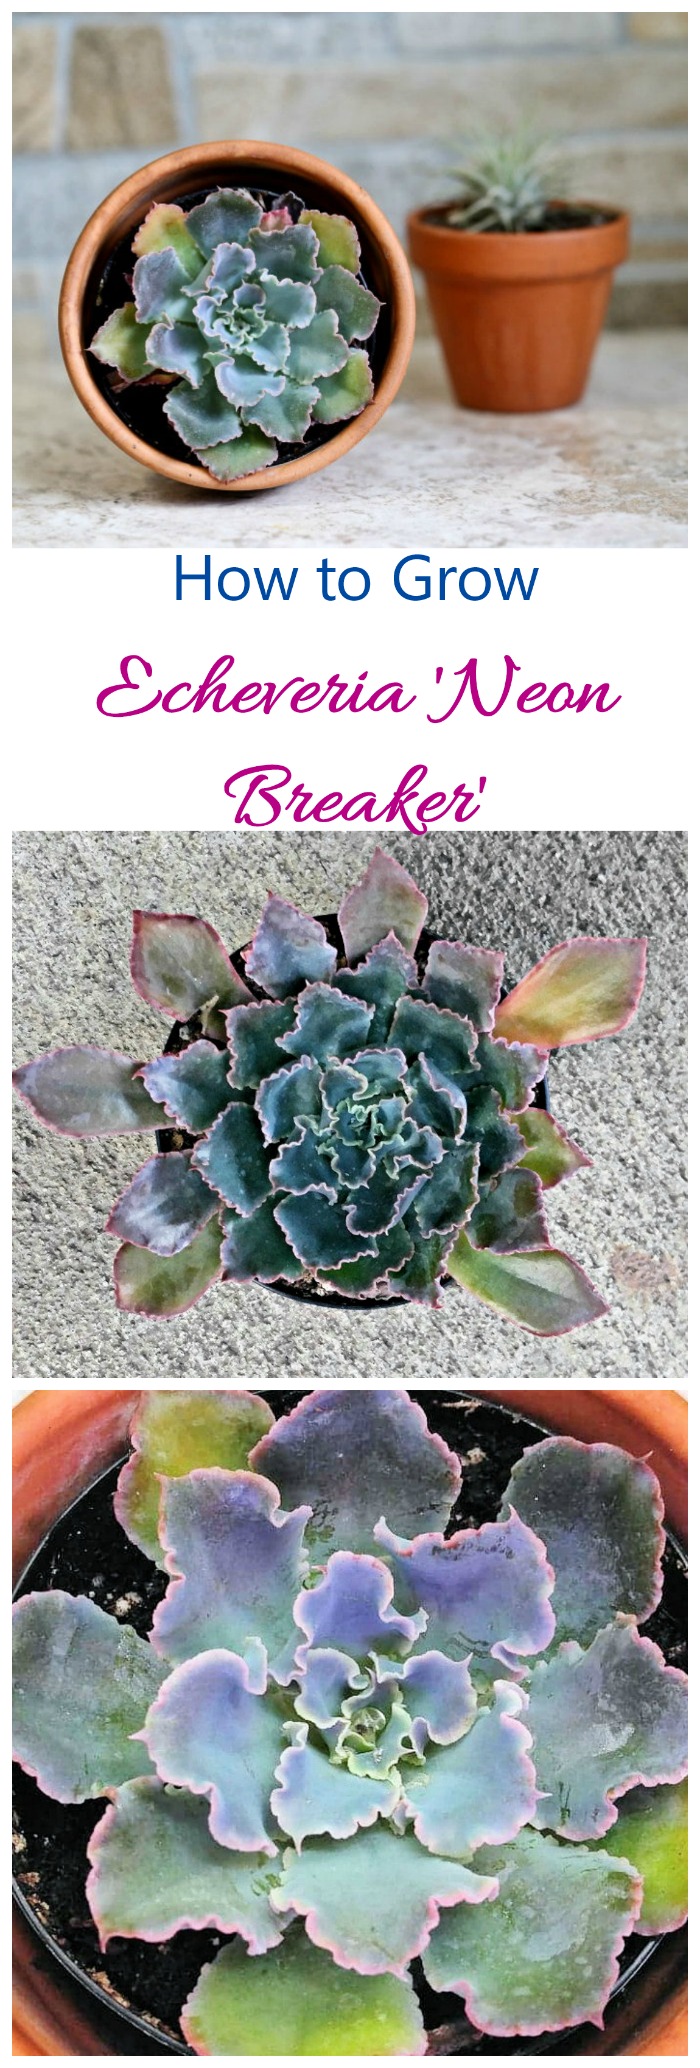 Echeveria Neon Breakers - Wachsen diese erstaunliche Sukkulente für große Farbe